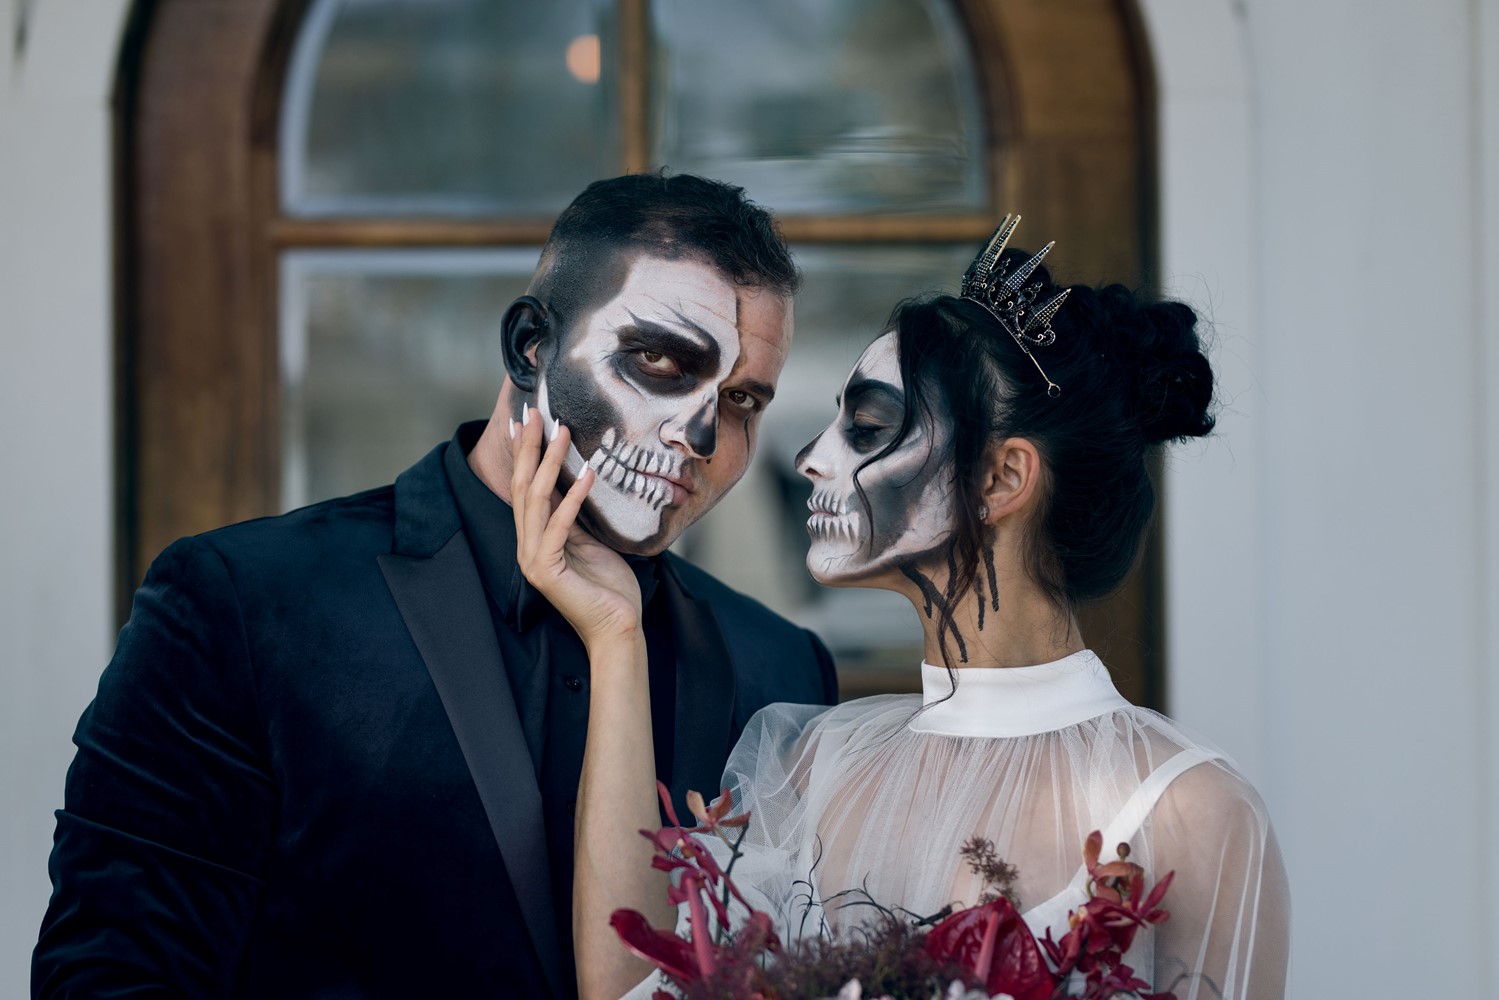 Main image: Till Death Do Us Part 1 - A Halloween Wedding